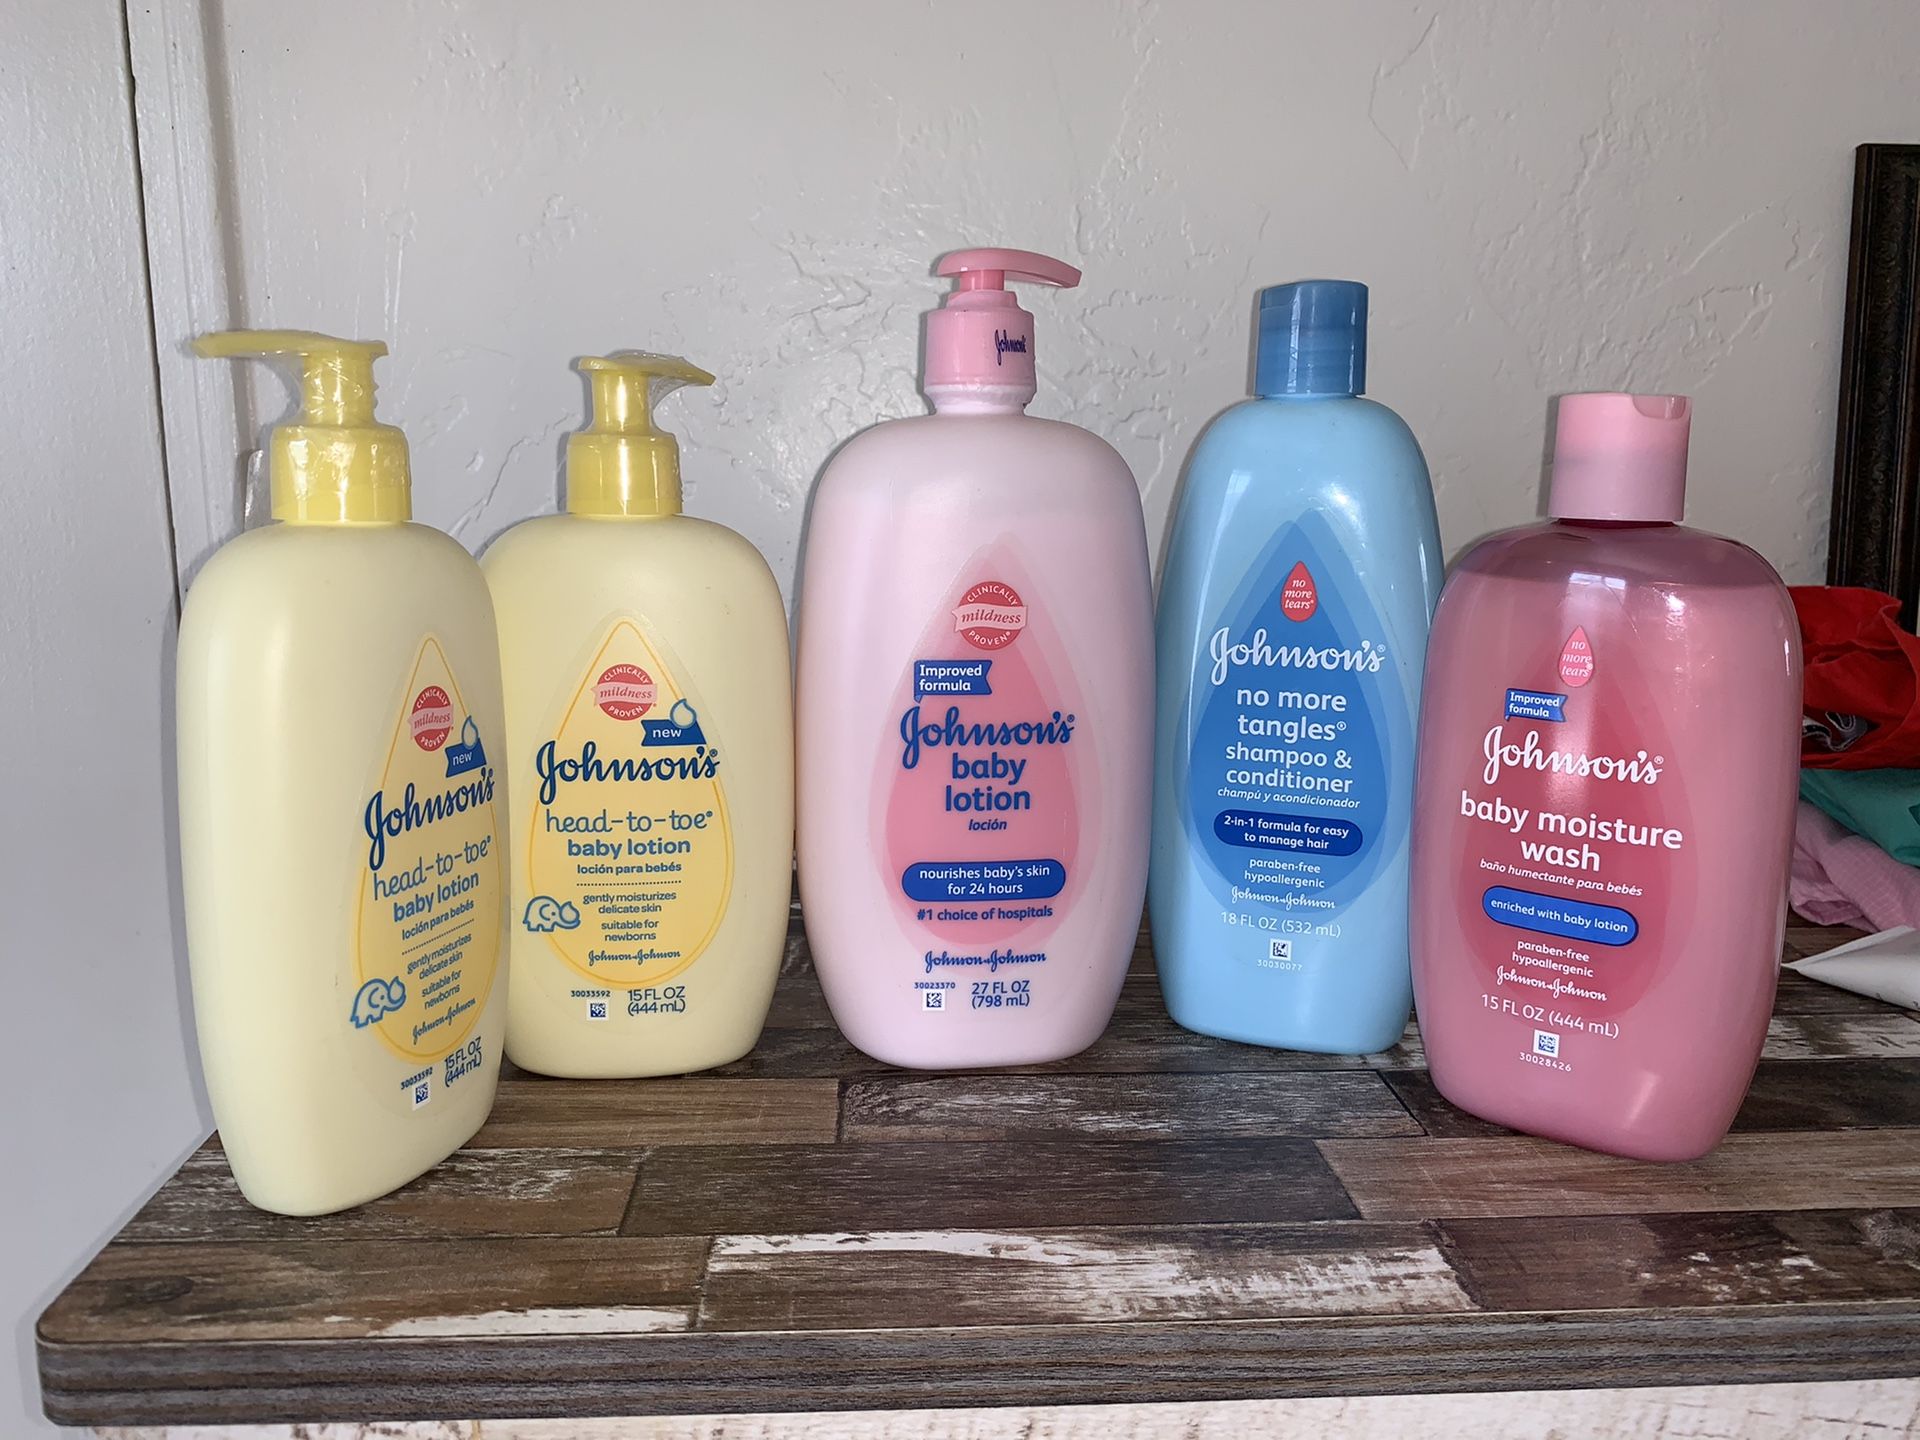 Baby Johnson's lotion and shampoo